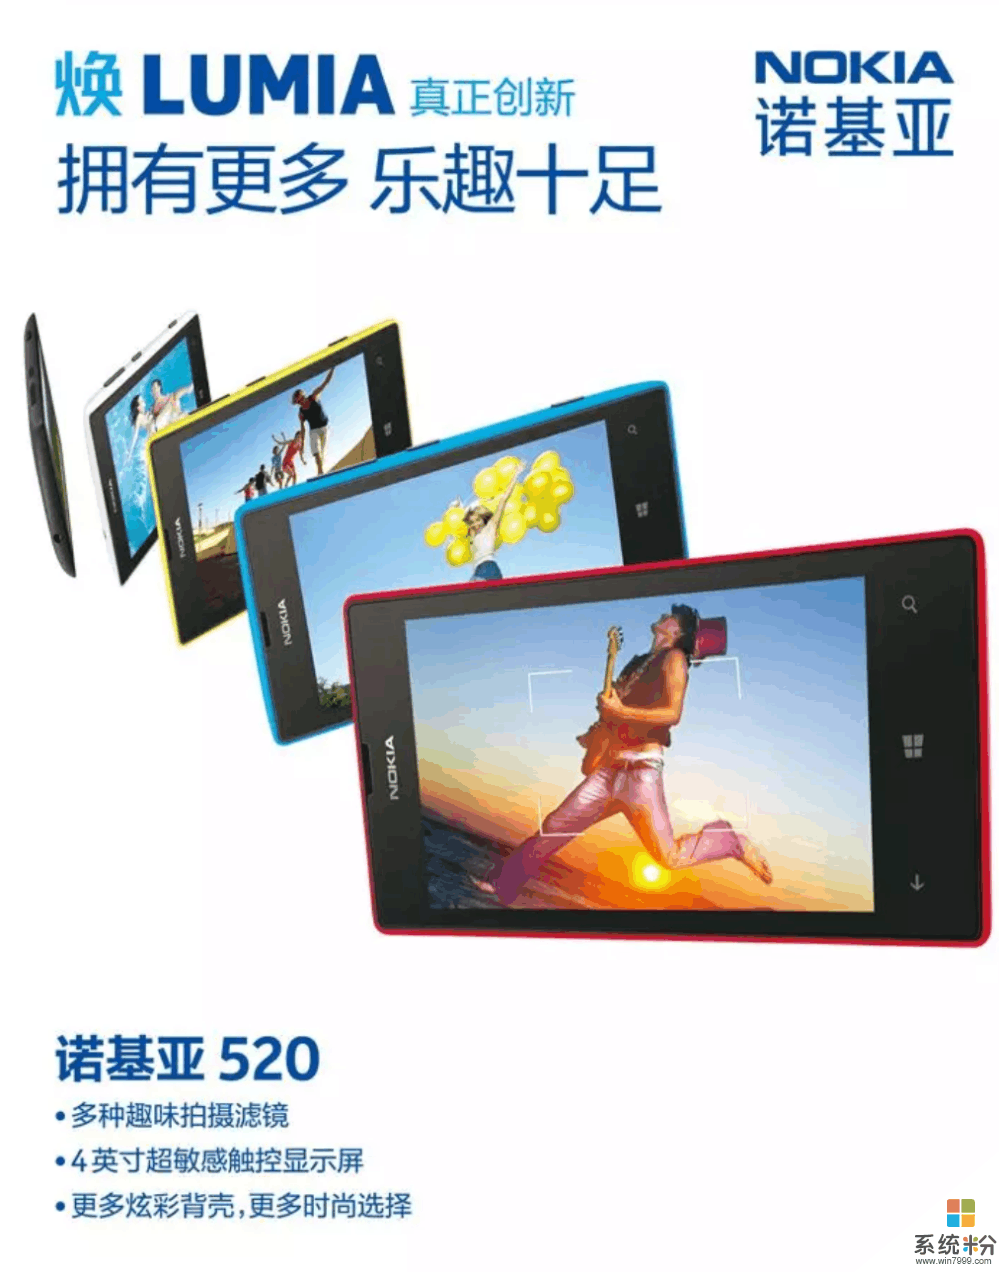 微软大卖情怀: 诺基亚Lumia520T重新上市, 定位百元机 你愿意买单吗?(2)